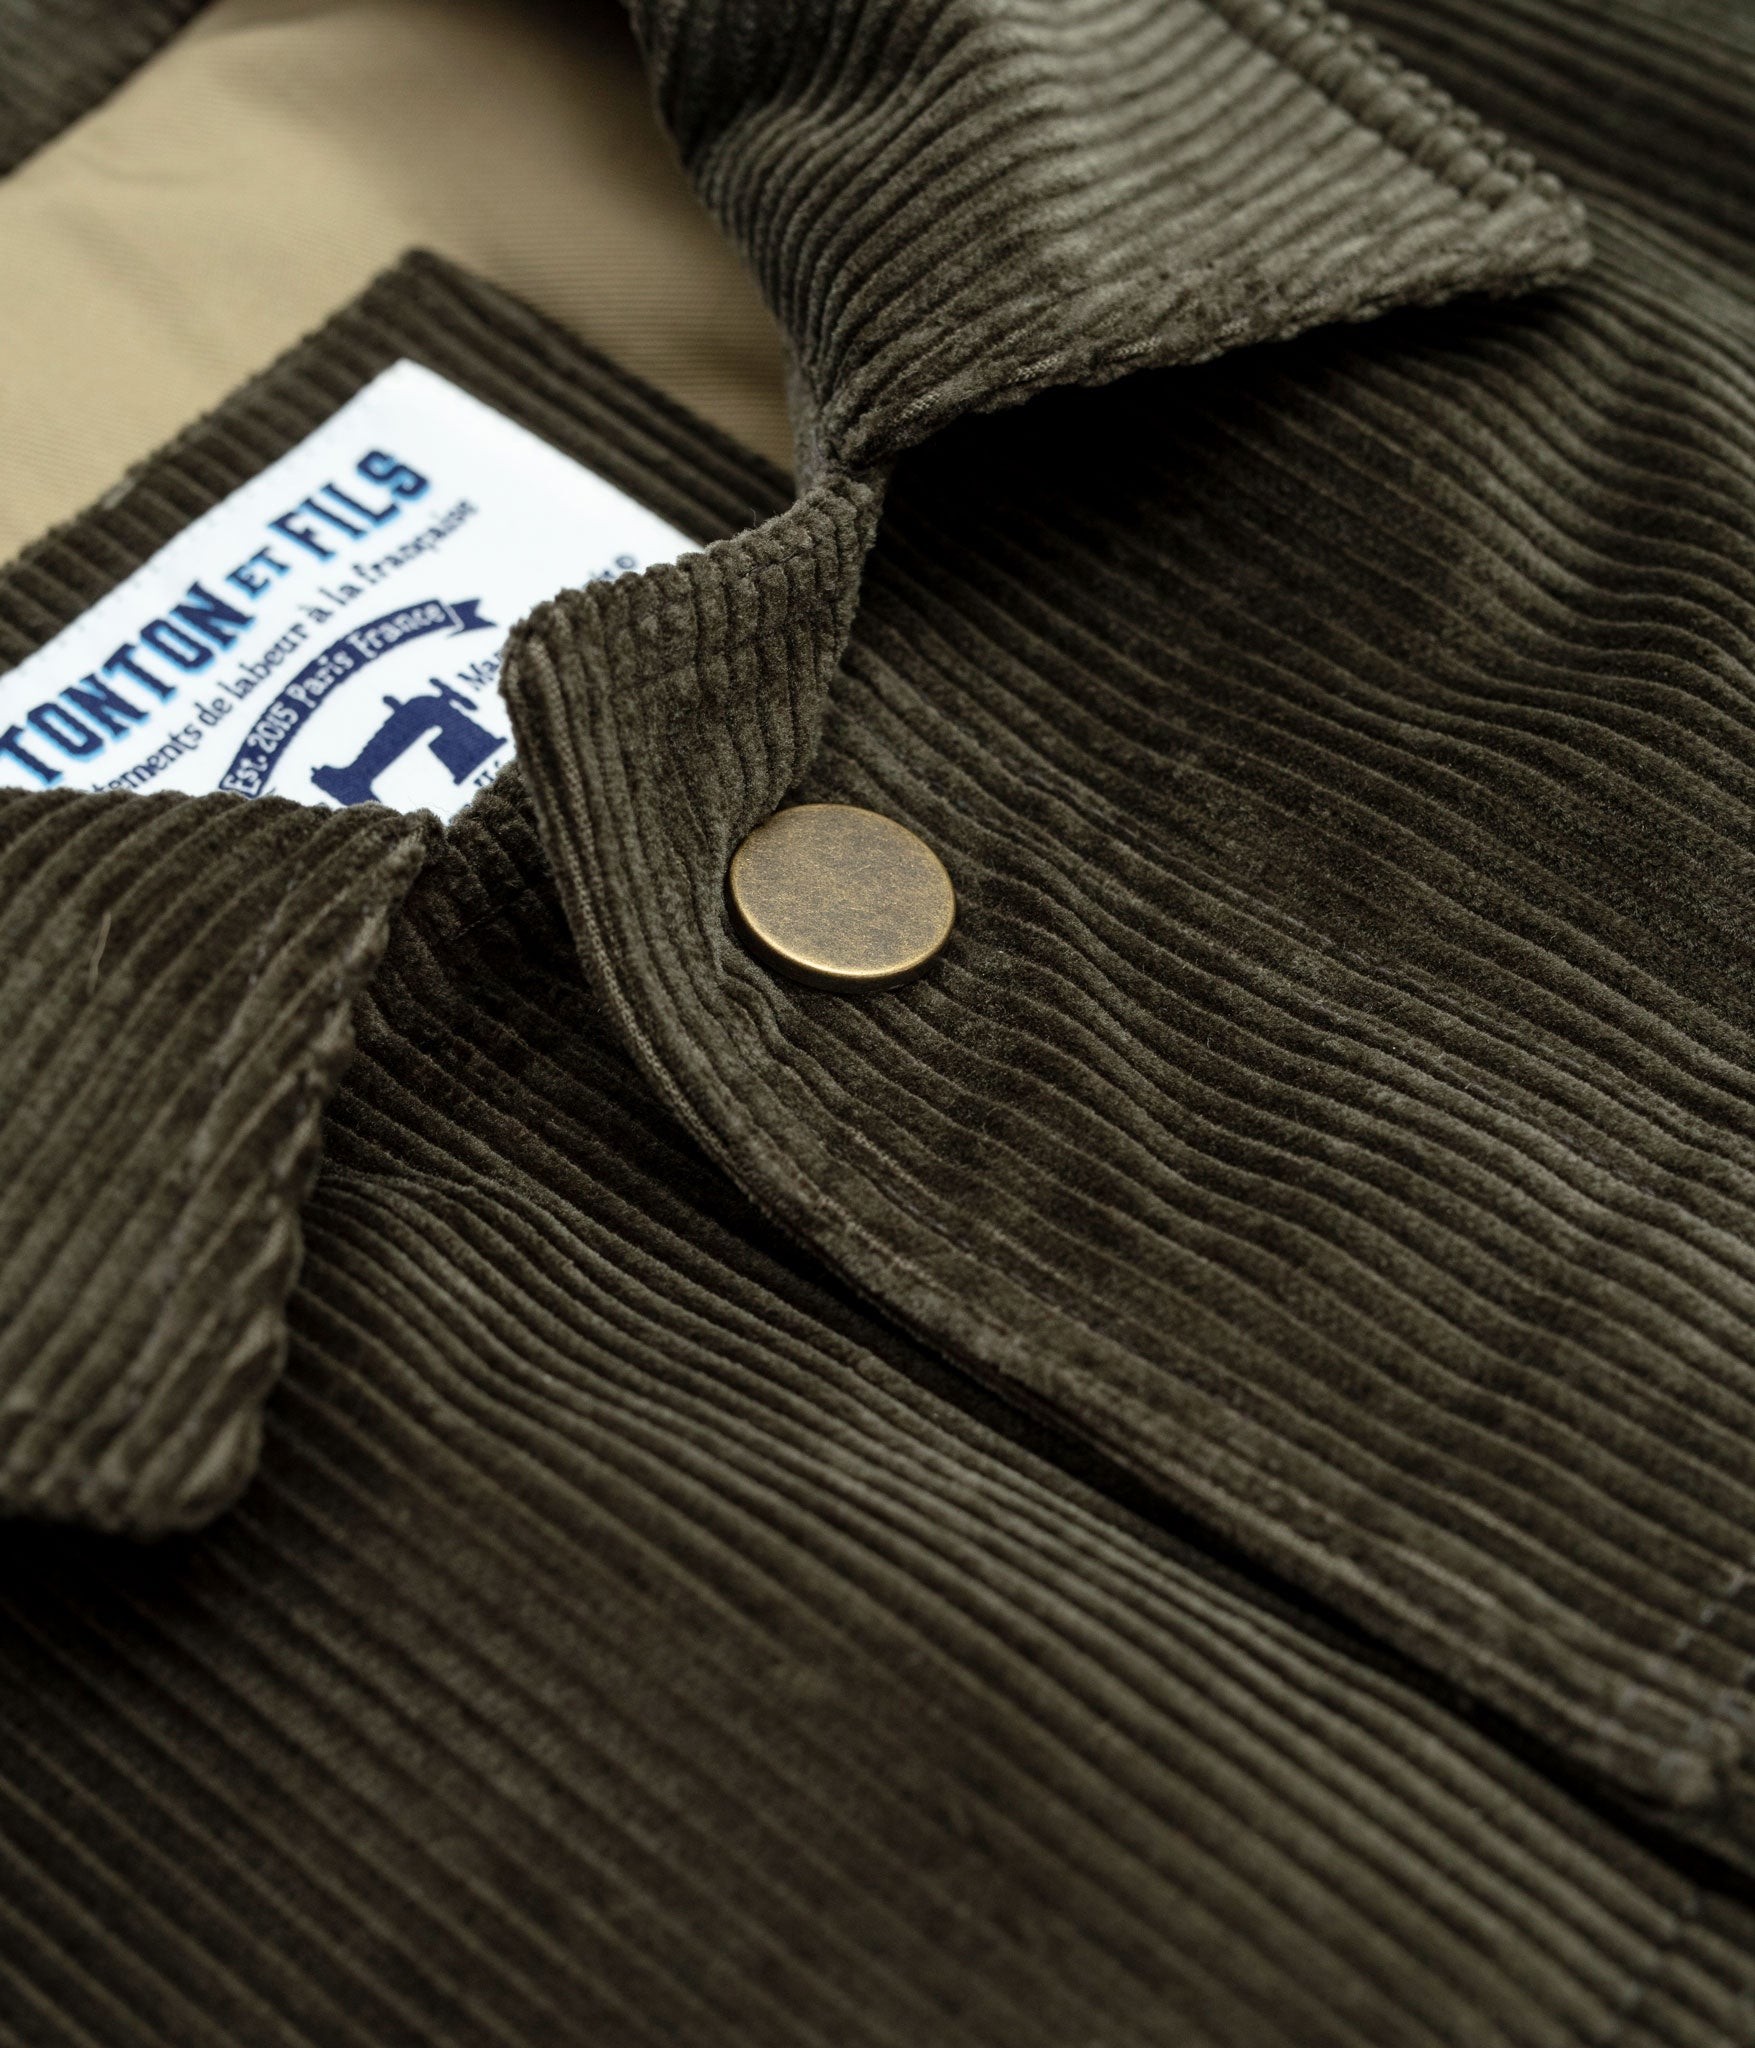 Tonton et Fils - La veste homme «Achille» velours olive - Fabriquée en France - Vue sur le col et la boutonnière